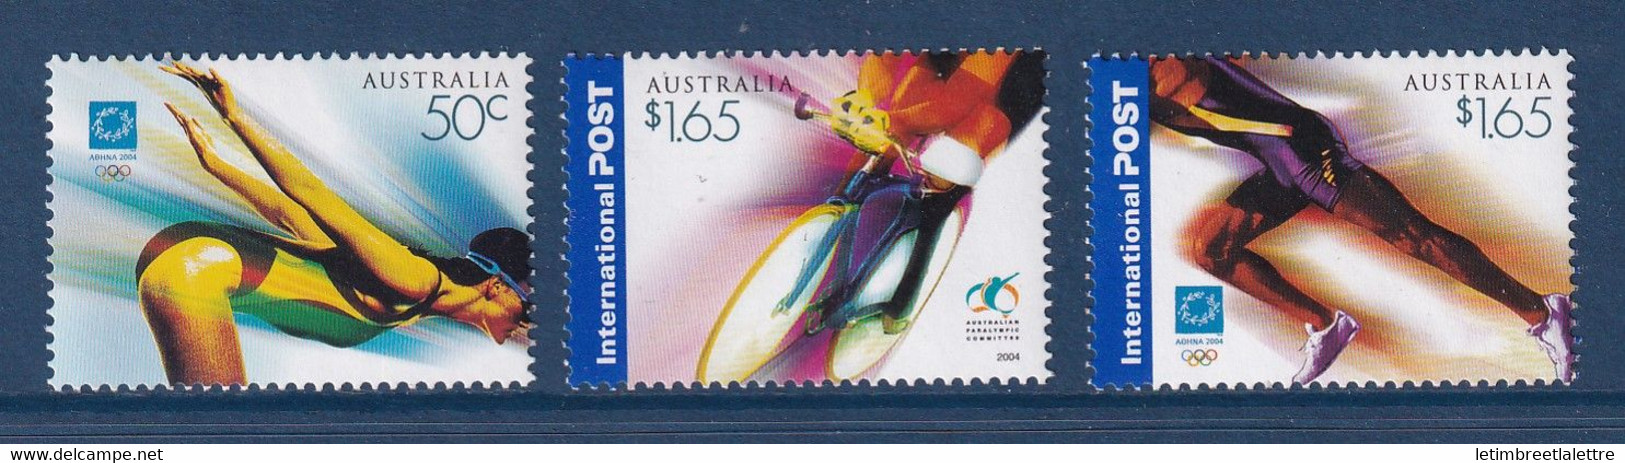 ⭐ Australie - YT N° 2222 à 2224 ** - Neuf Sans Charnière - 2004 ⭐ - Mint Stamps